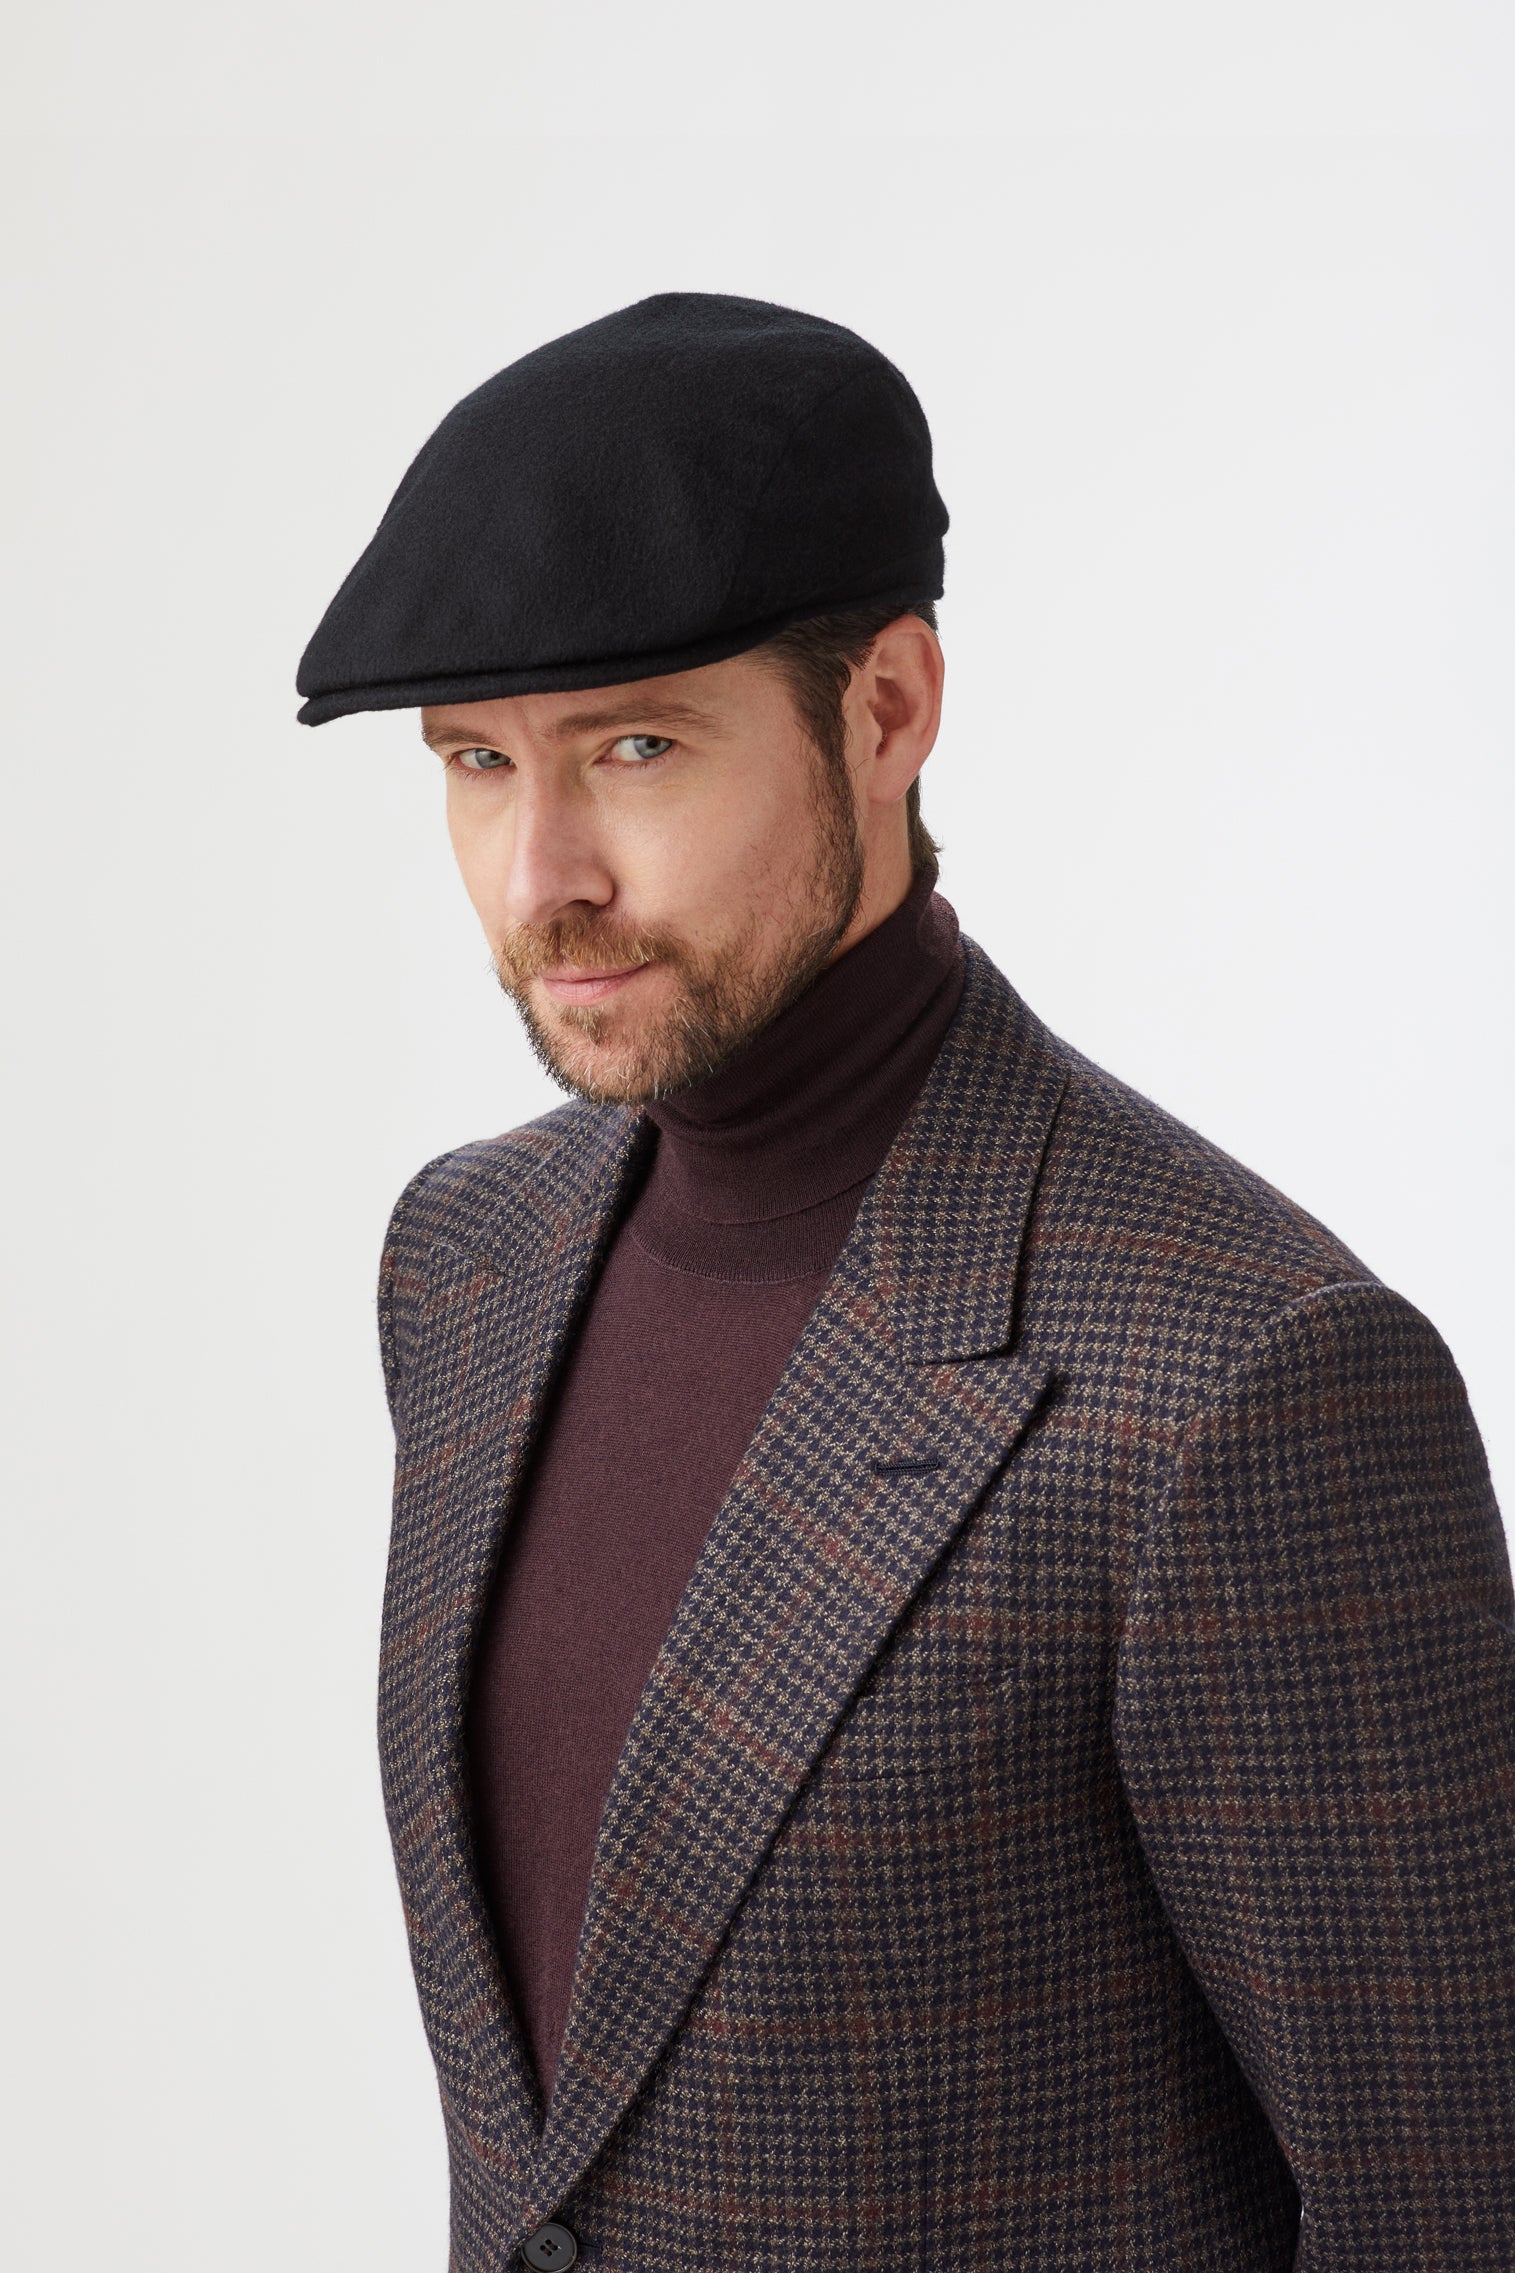 Escorial Wool Berkeley Flat Cap - Hats for Tall People - Lock & Co. Hatters London UK